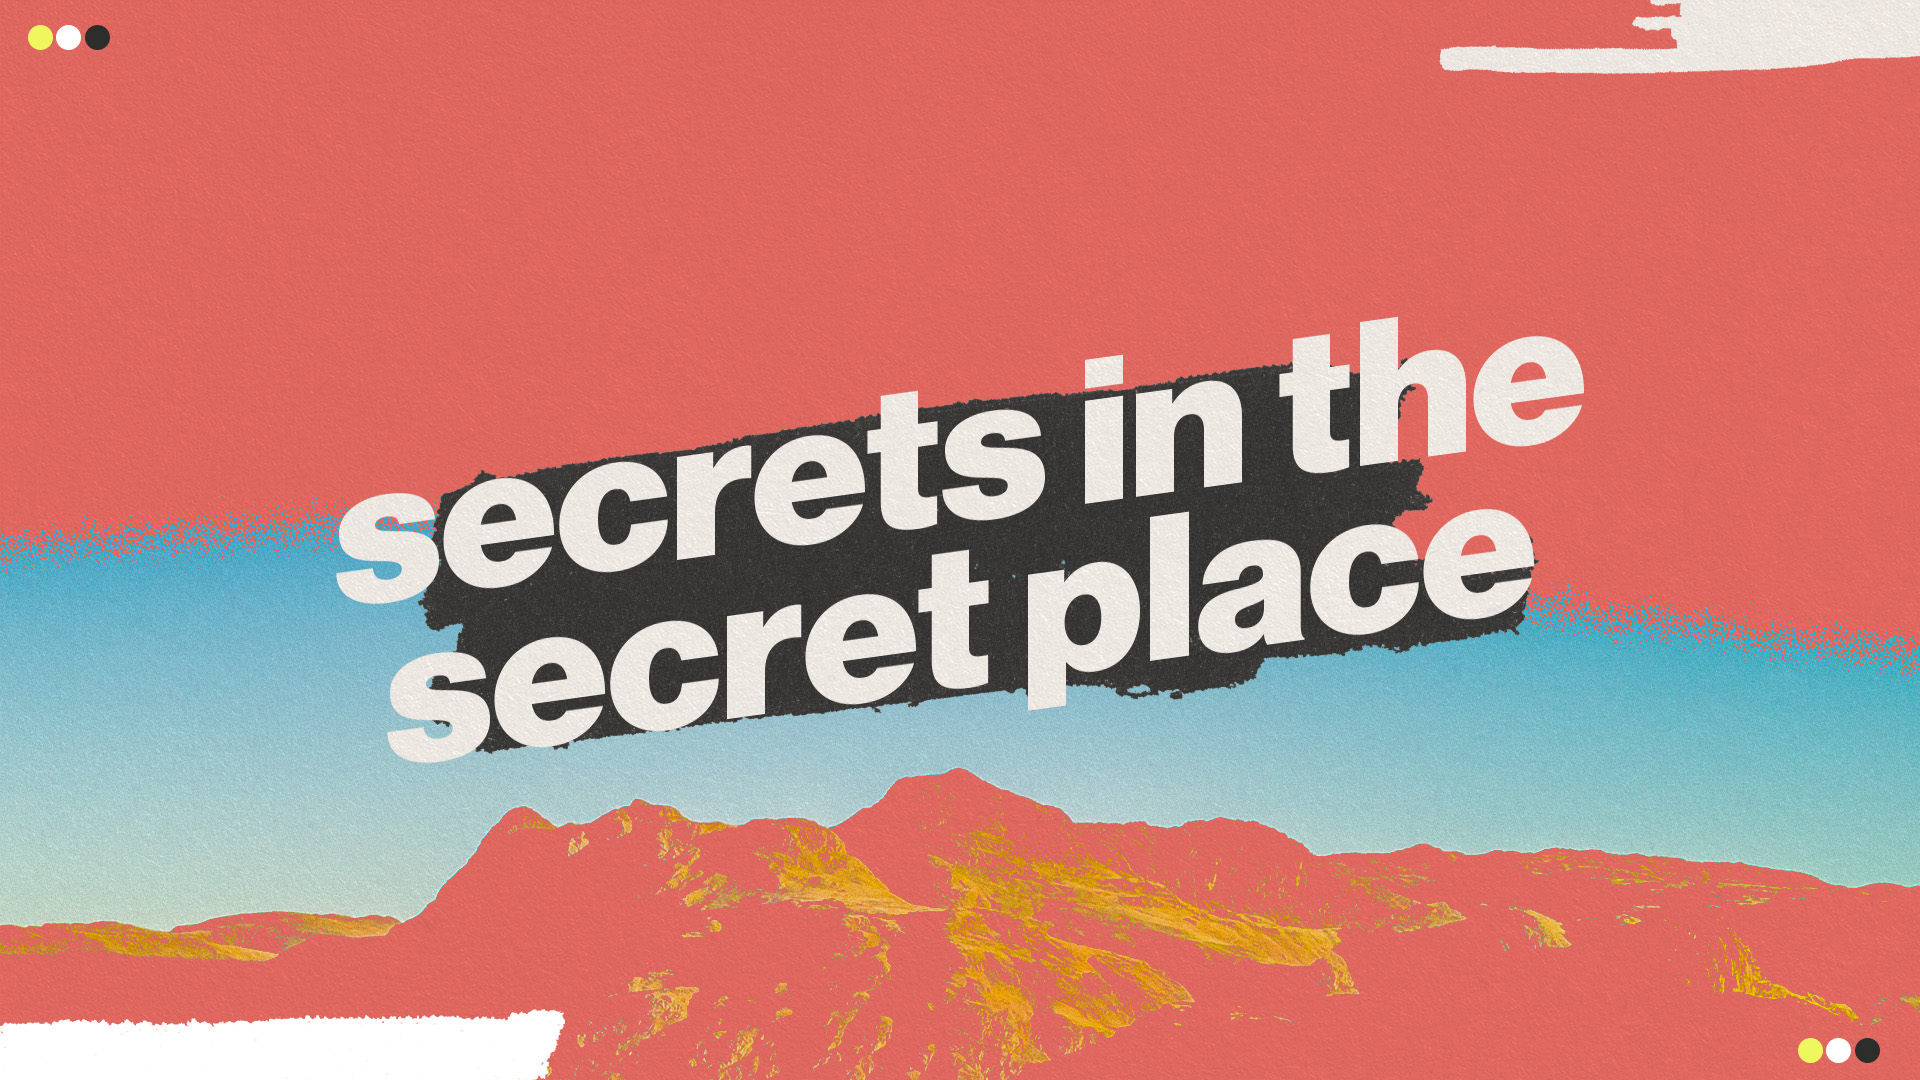 Secrets in the Secret Place